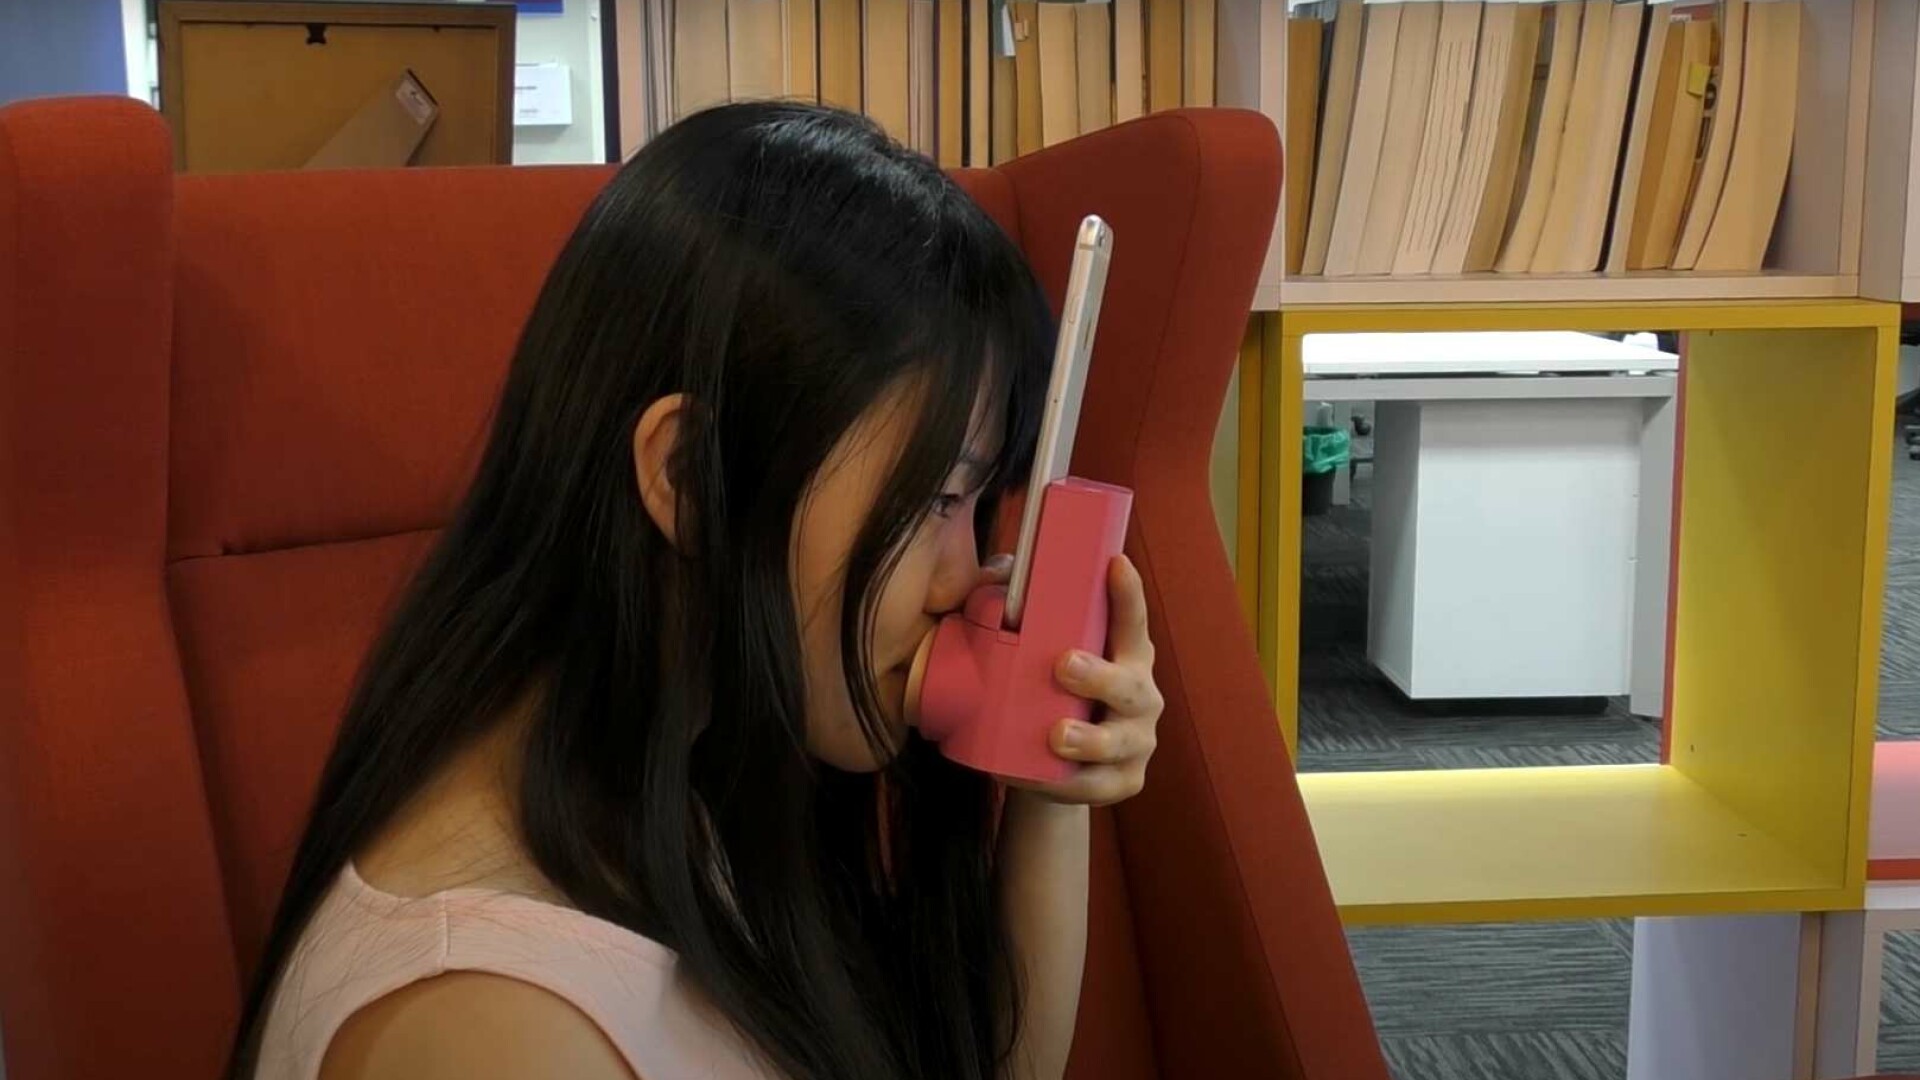 Gadgetul care transmite sărutul prin videocall. Cum funcționează „Pupătorul”